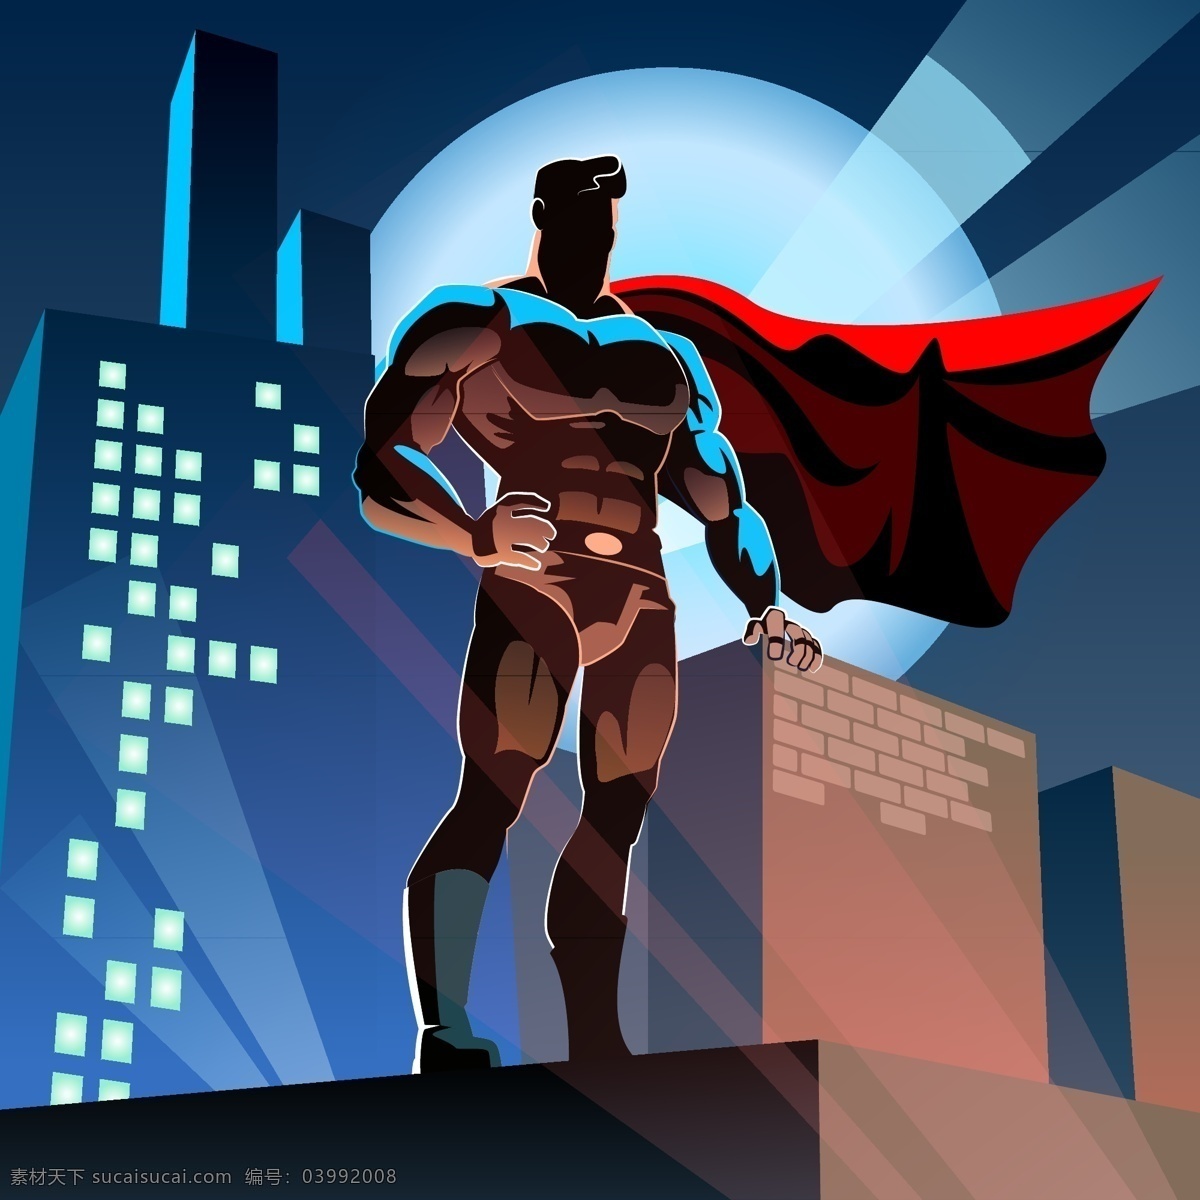 超级英雄人物 超级英雄 英雄人物 卡通超级英雄 卡通英雄人物 超人 超人矢量 共享设计矢量 人物图库